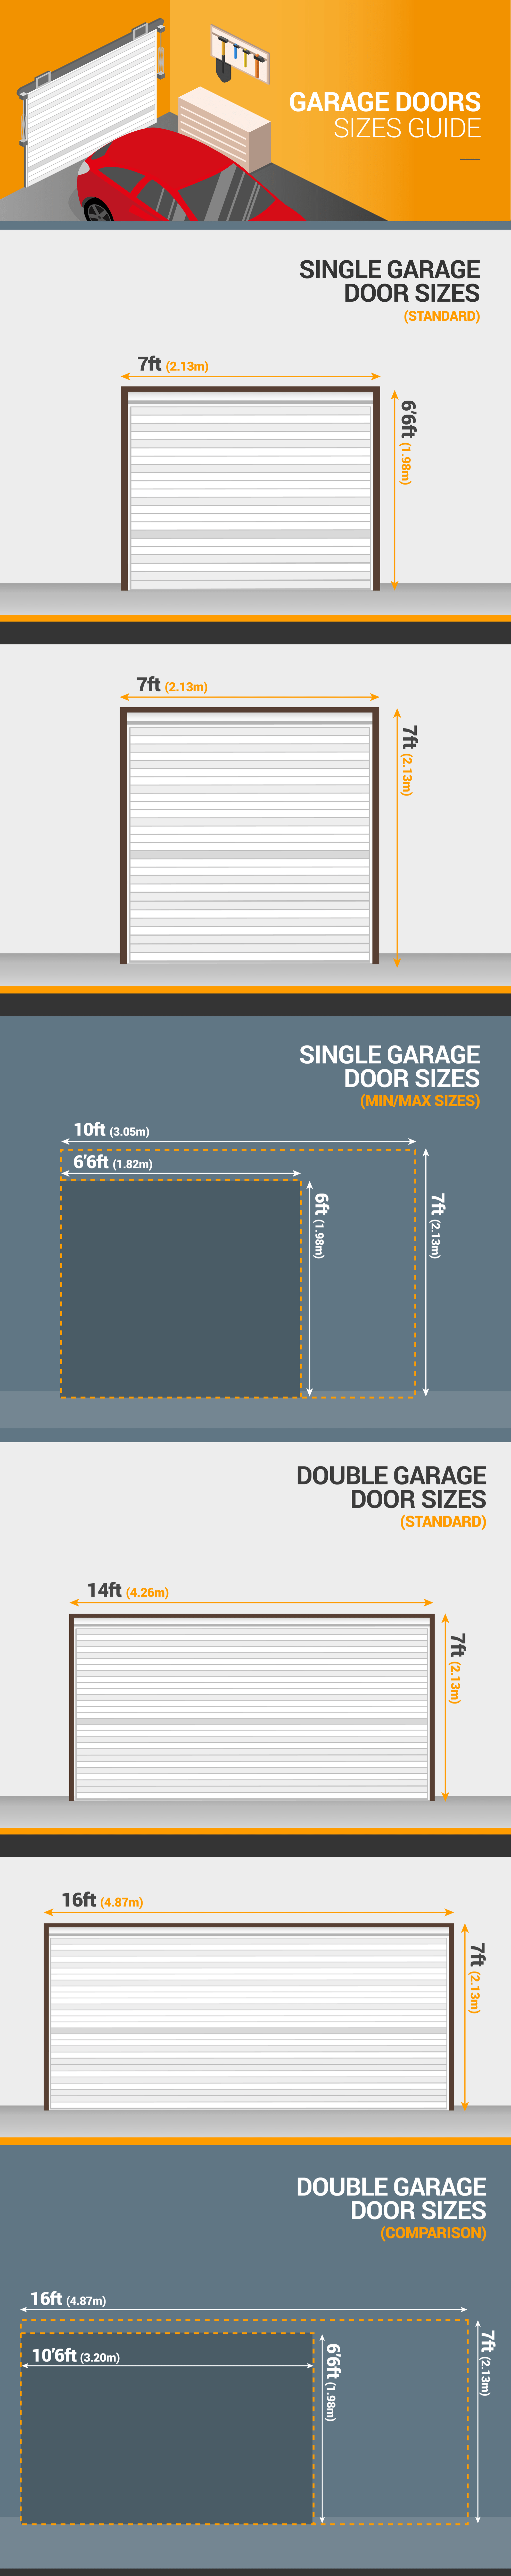 Garage Doors Sizes Guide Standard Garage Door Dimensions Doormatic Garage Doors